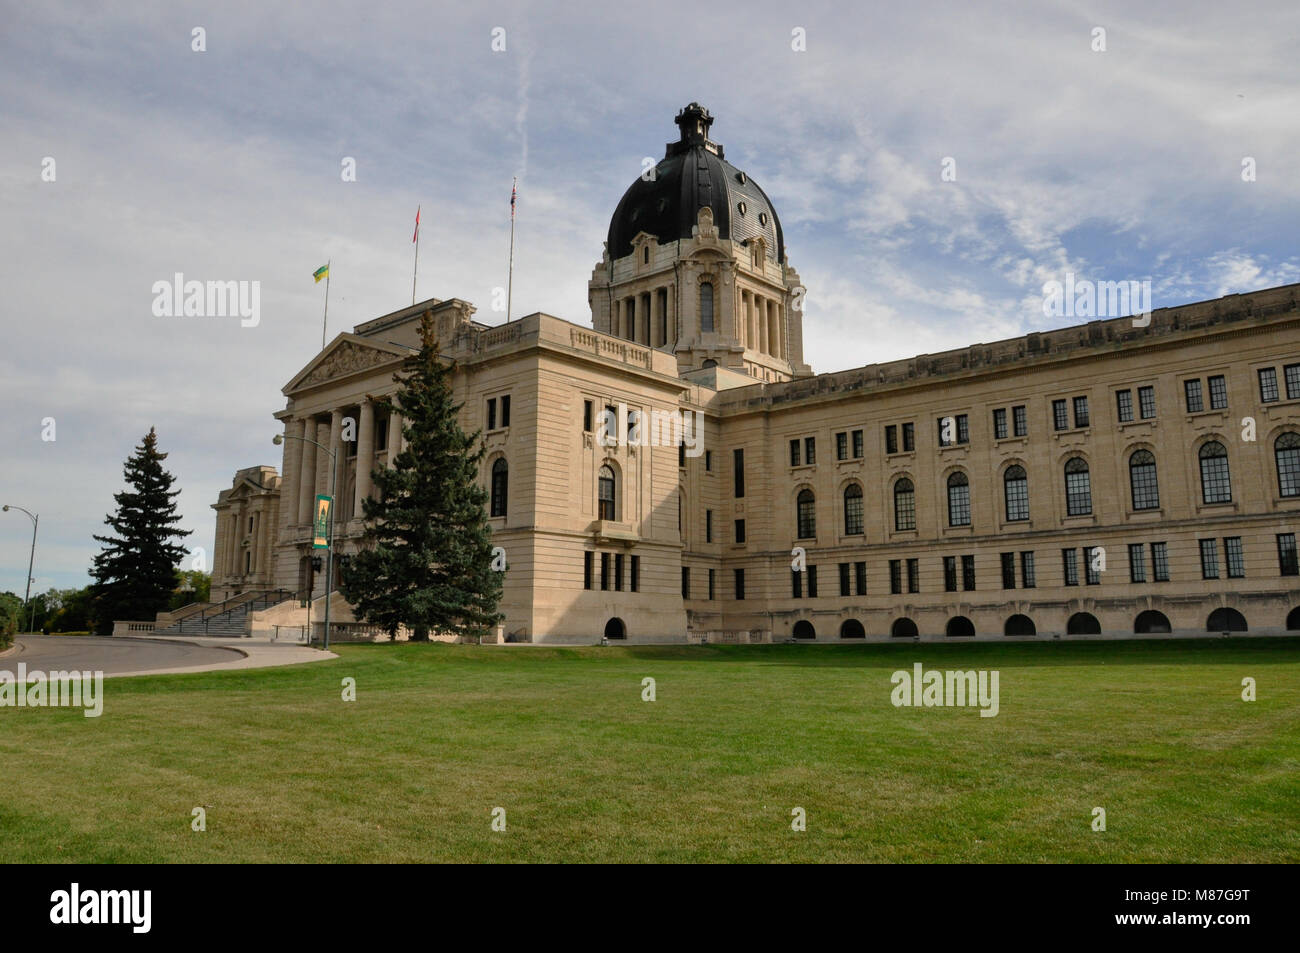 Exterior of the Saskatchewan Legislative Building in Regina, Saskatchewan, Canada. It houses the Legislative Assembly of Saskatchewan. Stock Photo